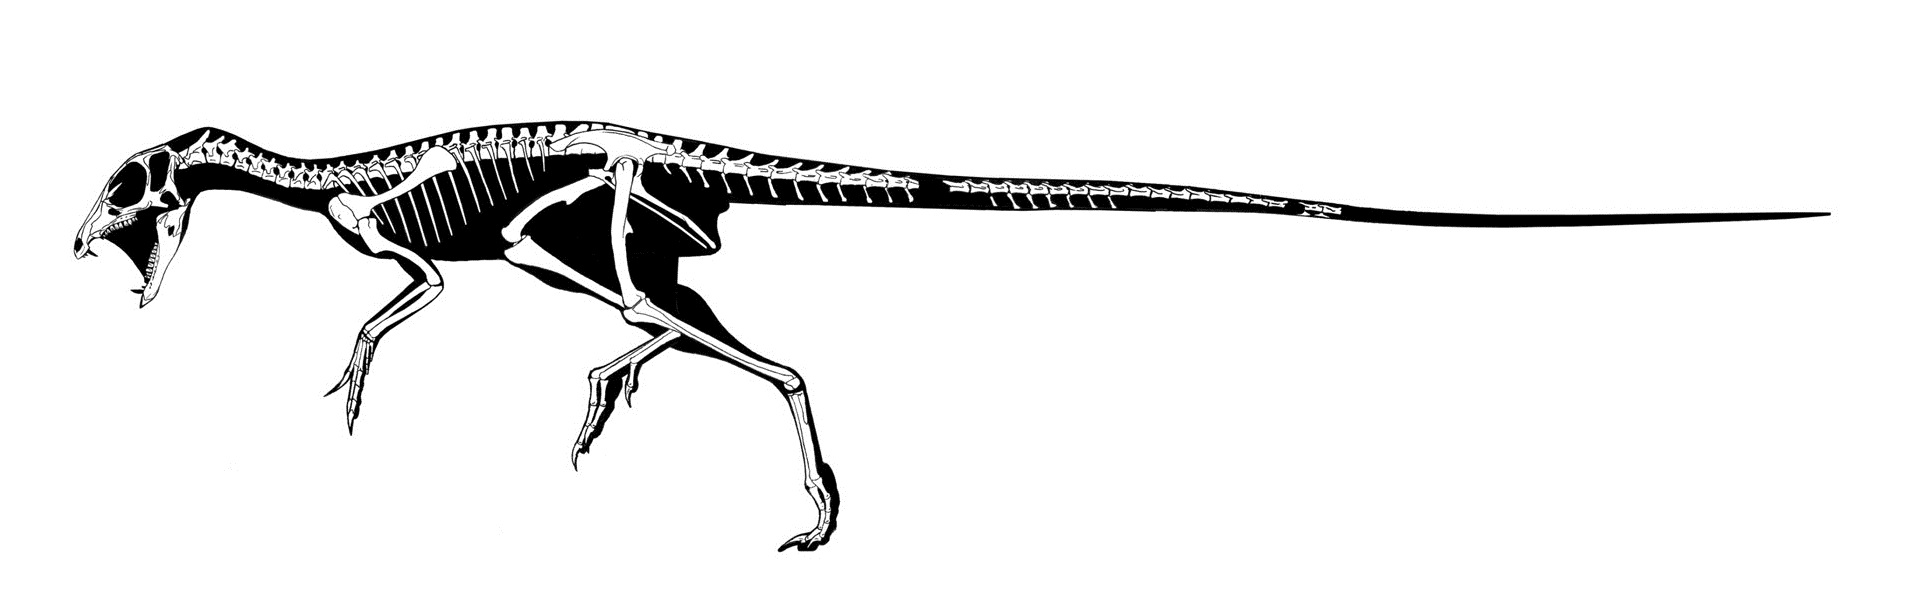 Skeleton of Heterodontosaurus tucki